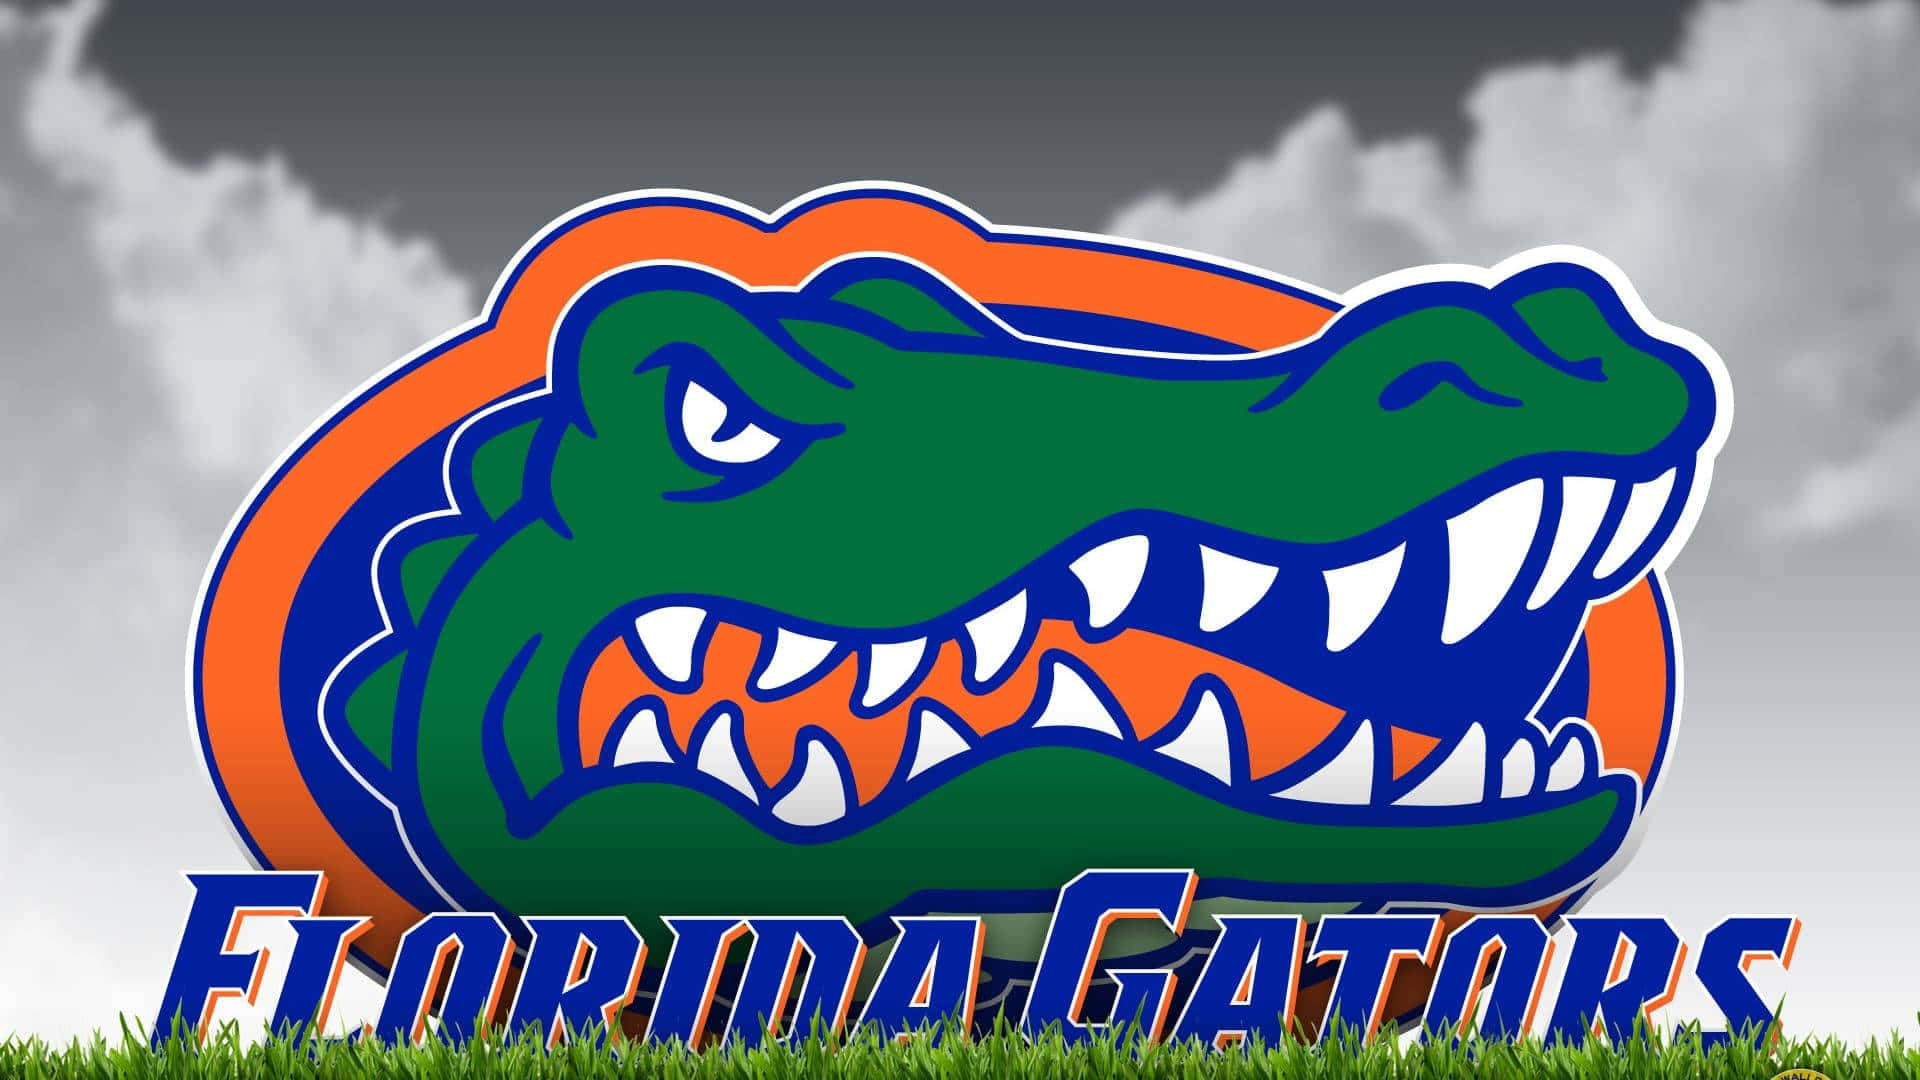 Vis din støtte til Florida Gators med dette officielle logo tapet. Wallpaper